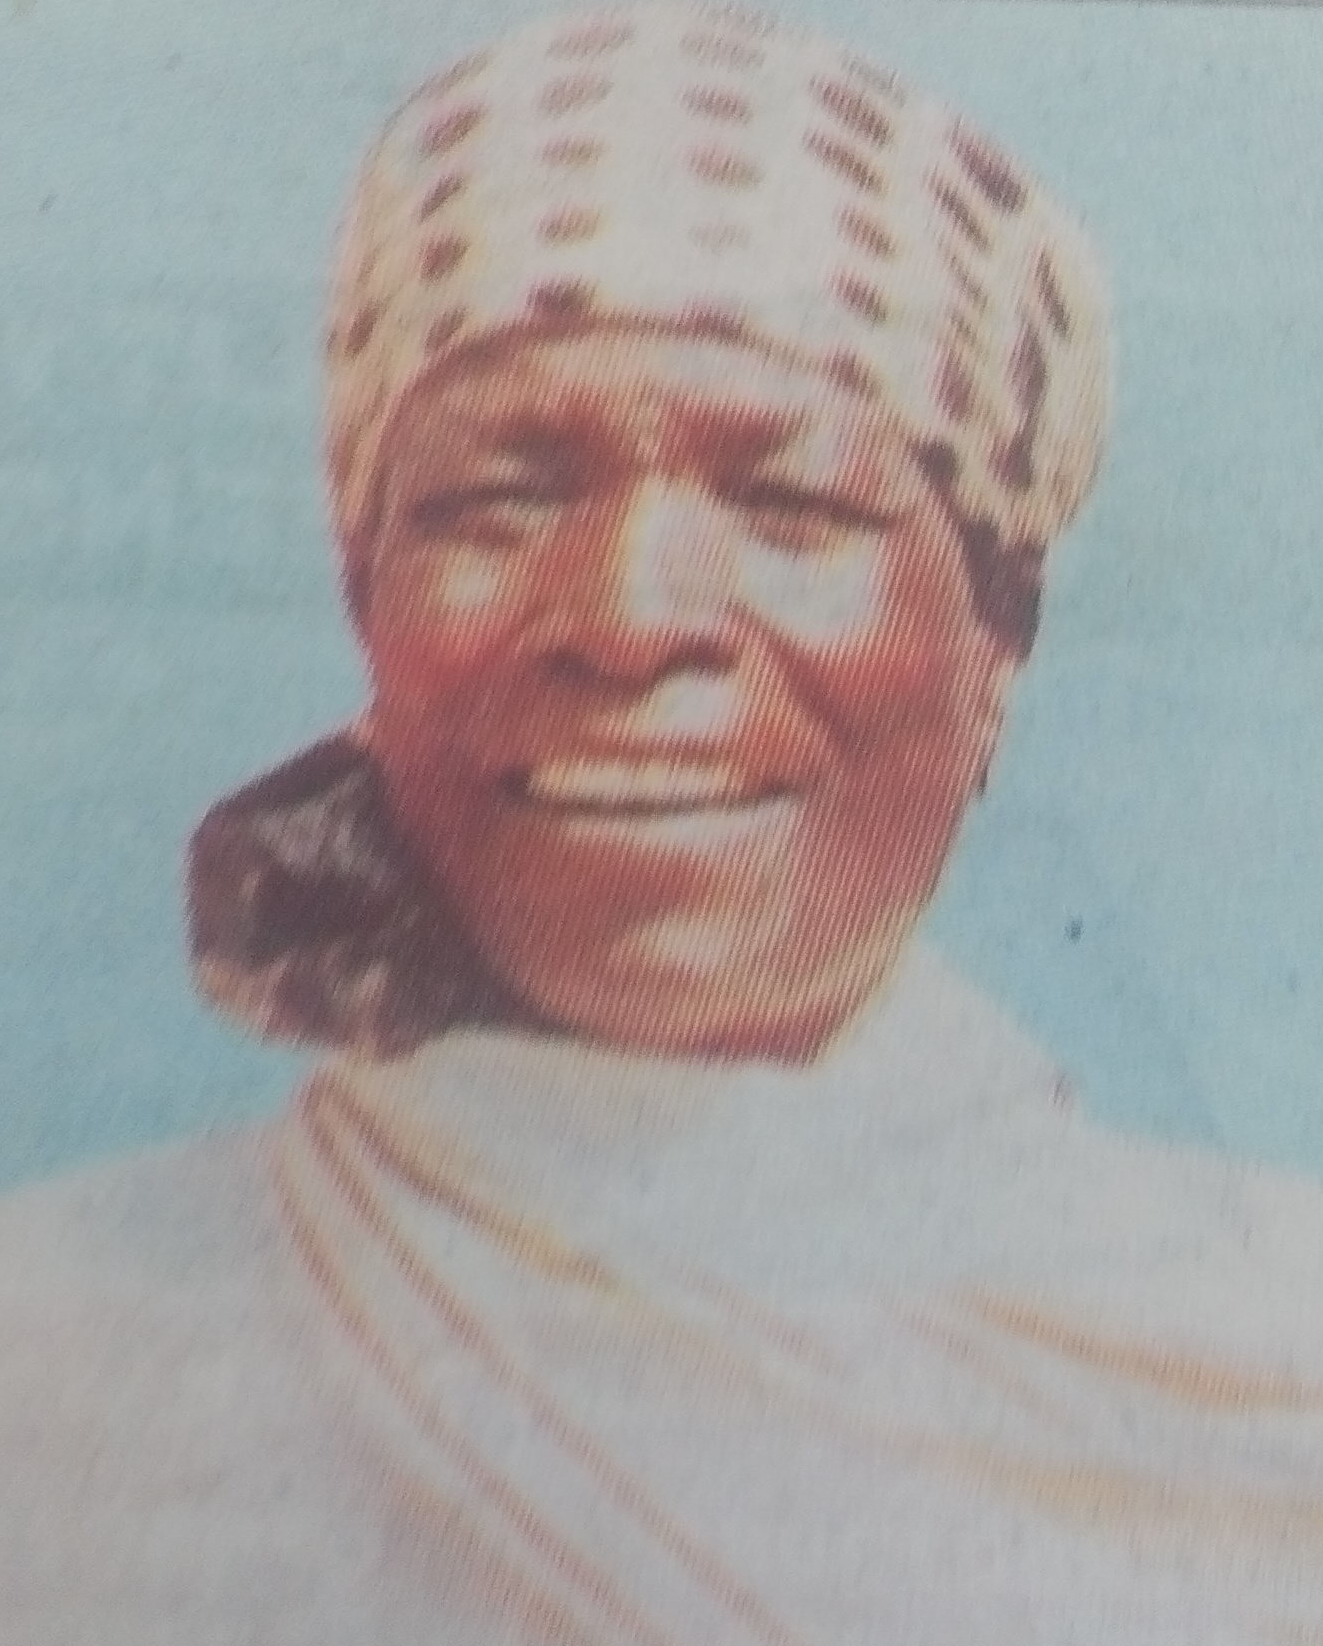 Obituary Image of Risanael Akelo Liech